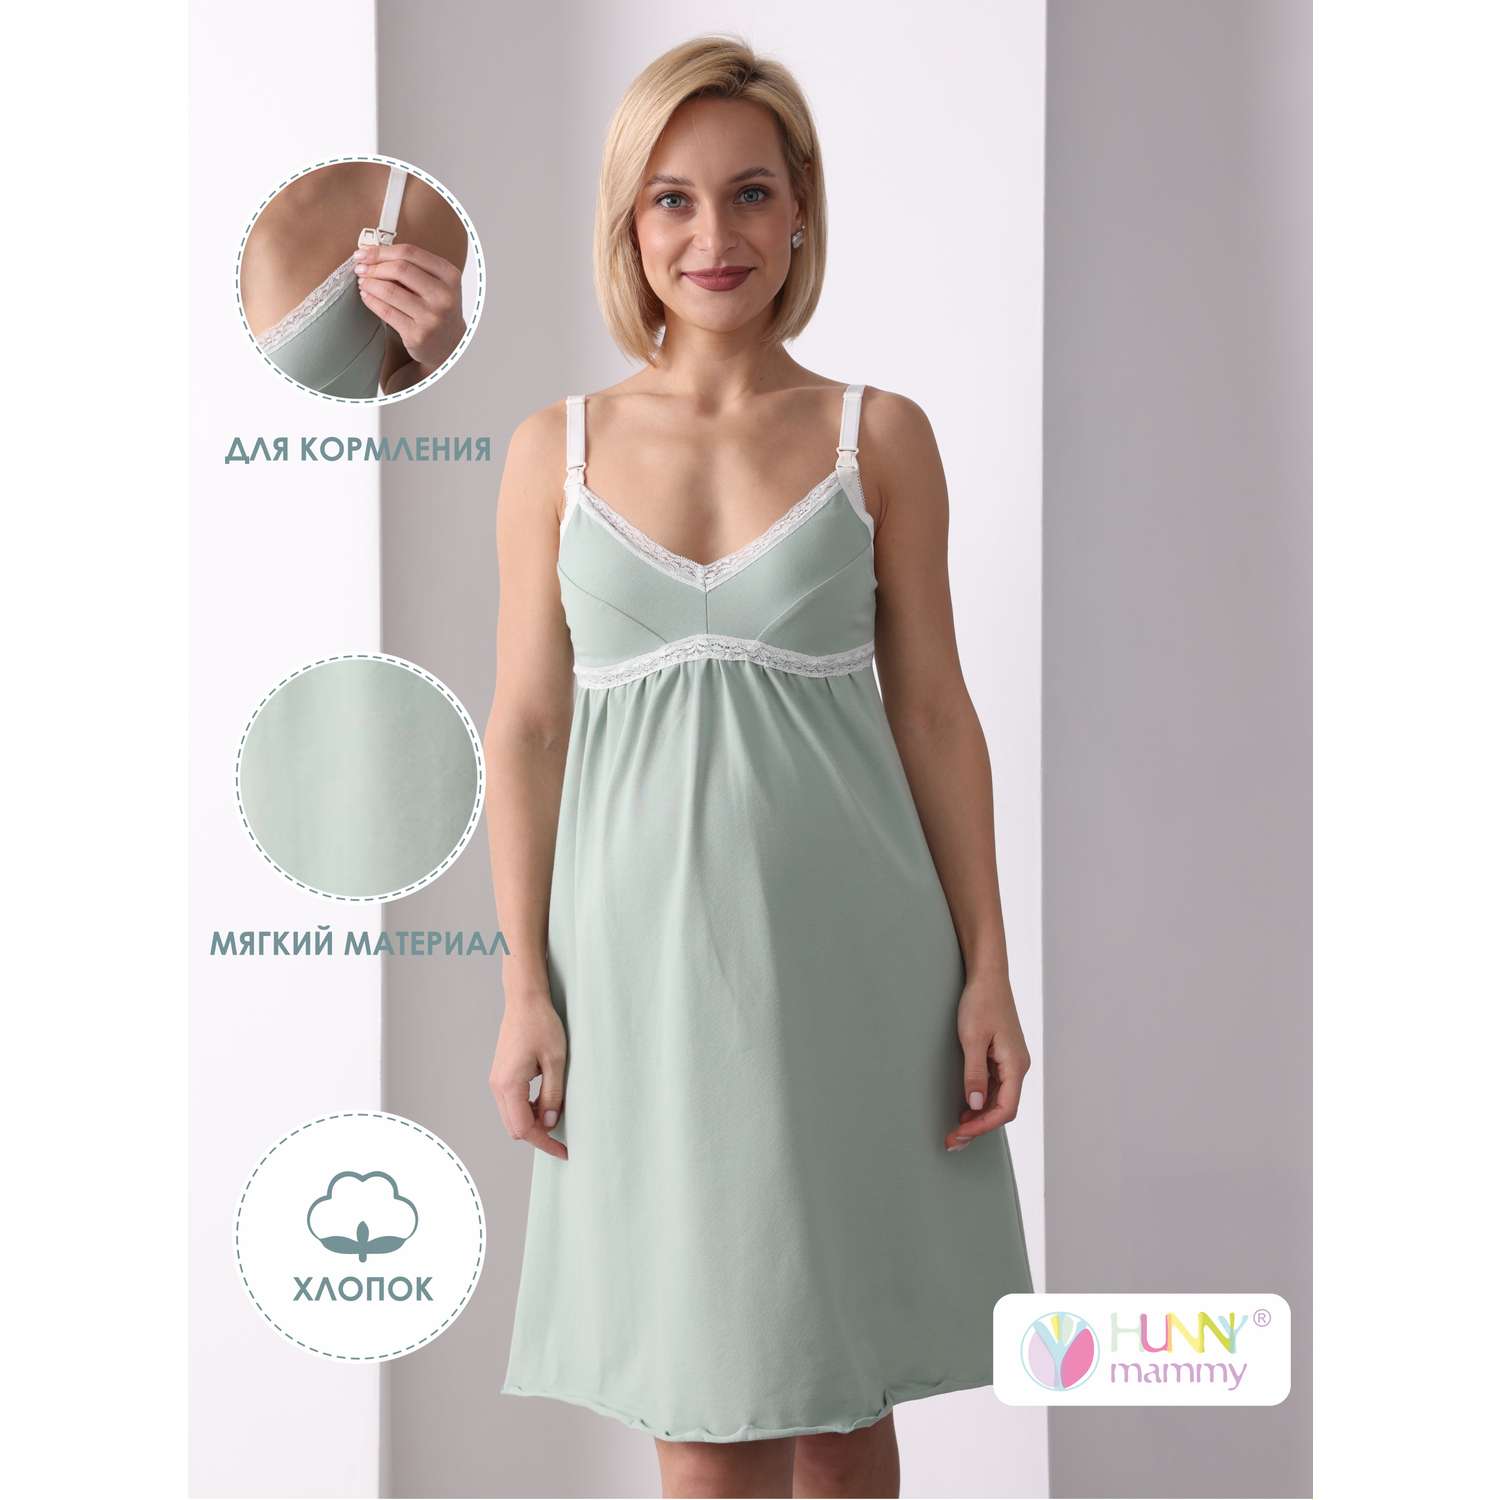 Сорочка для беременных Hunny Mammy 1-НМП 10102 Светло-зеленый/молочный - фото 2